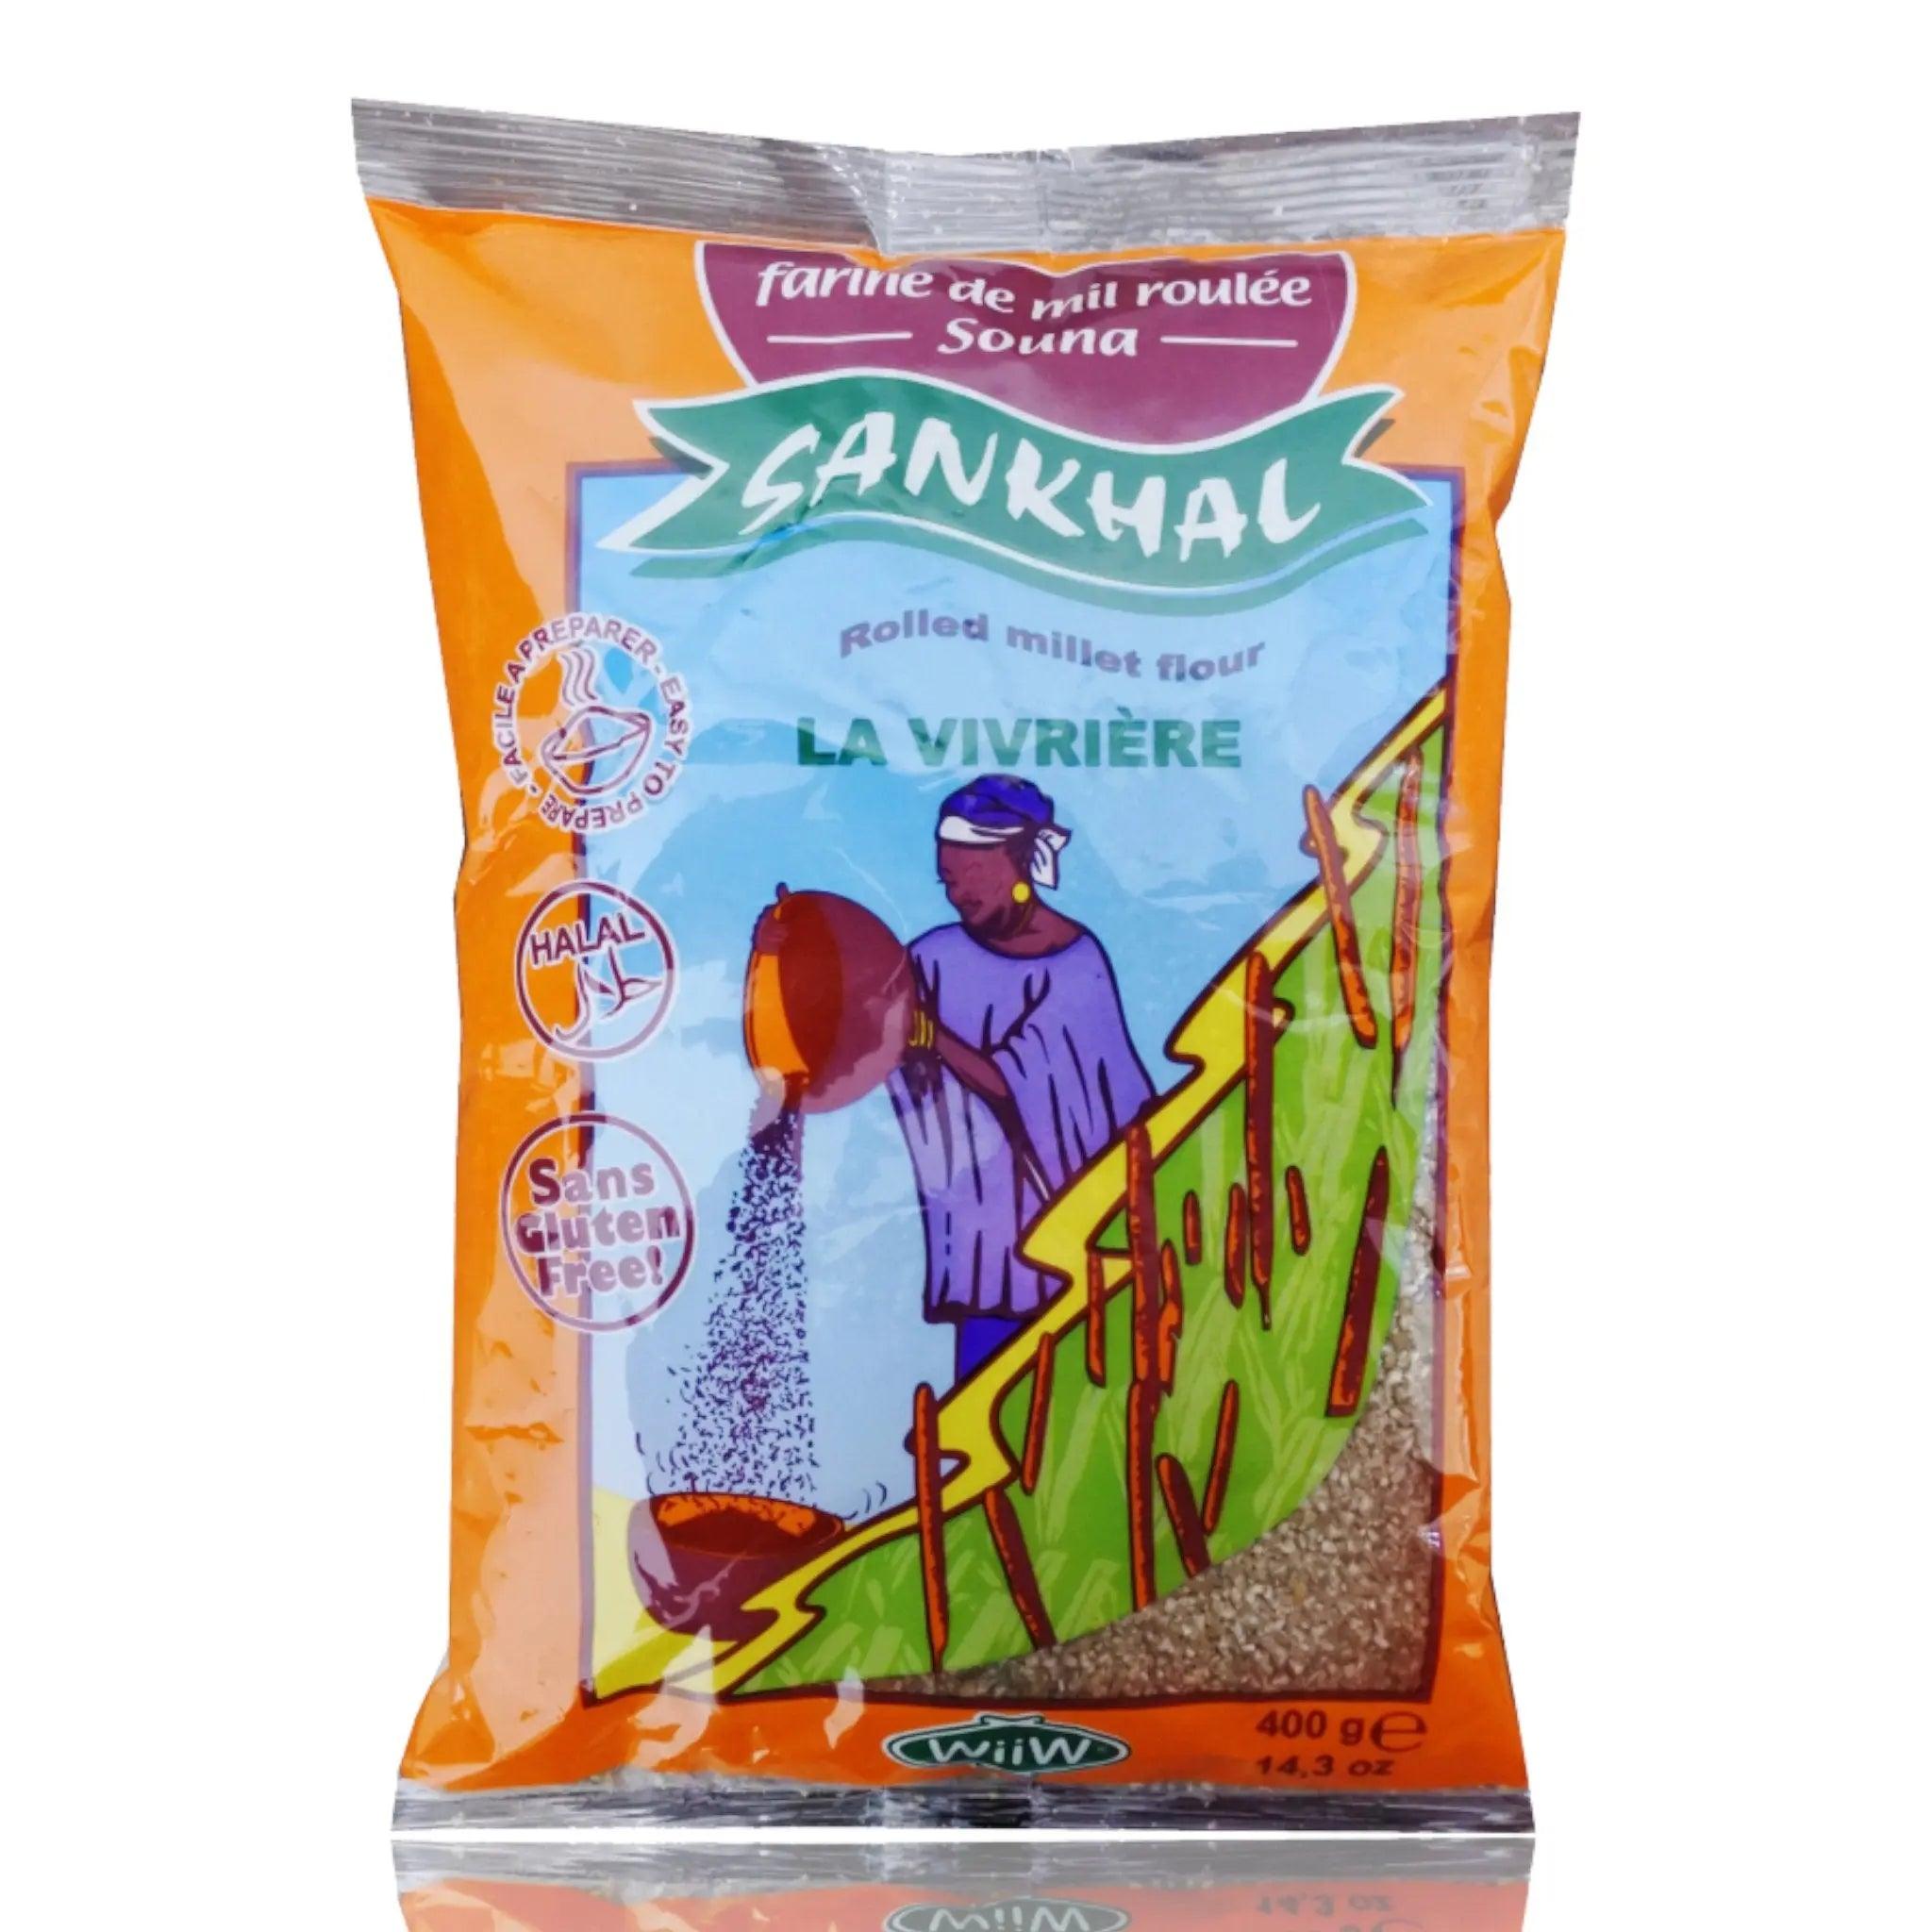 La Vivriere Sankhal Flour - Honesty Sales U.K